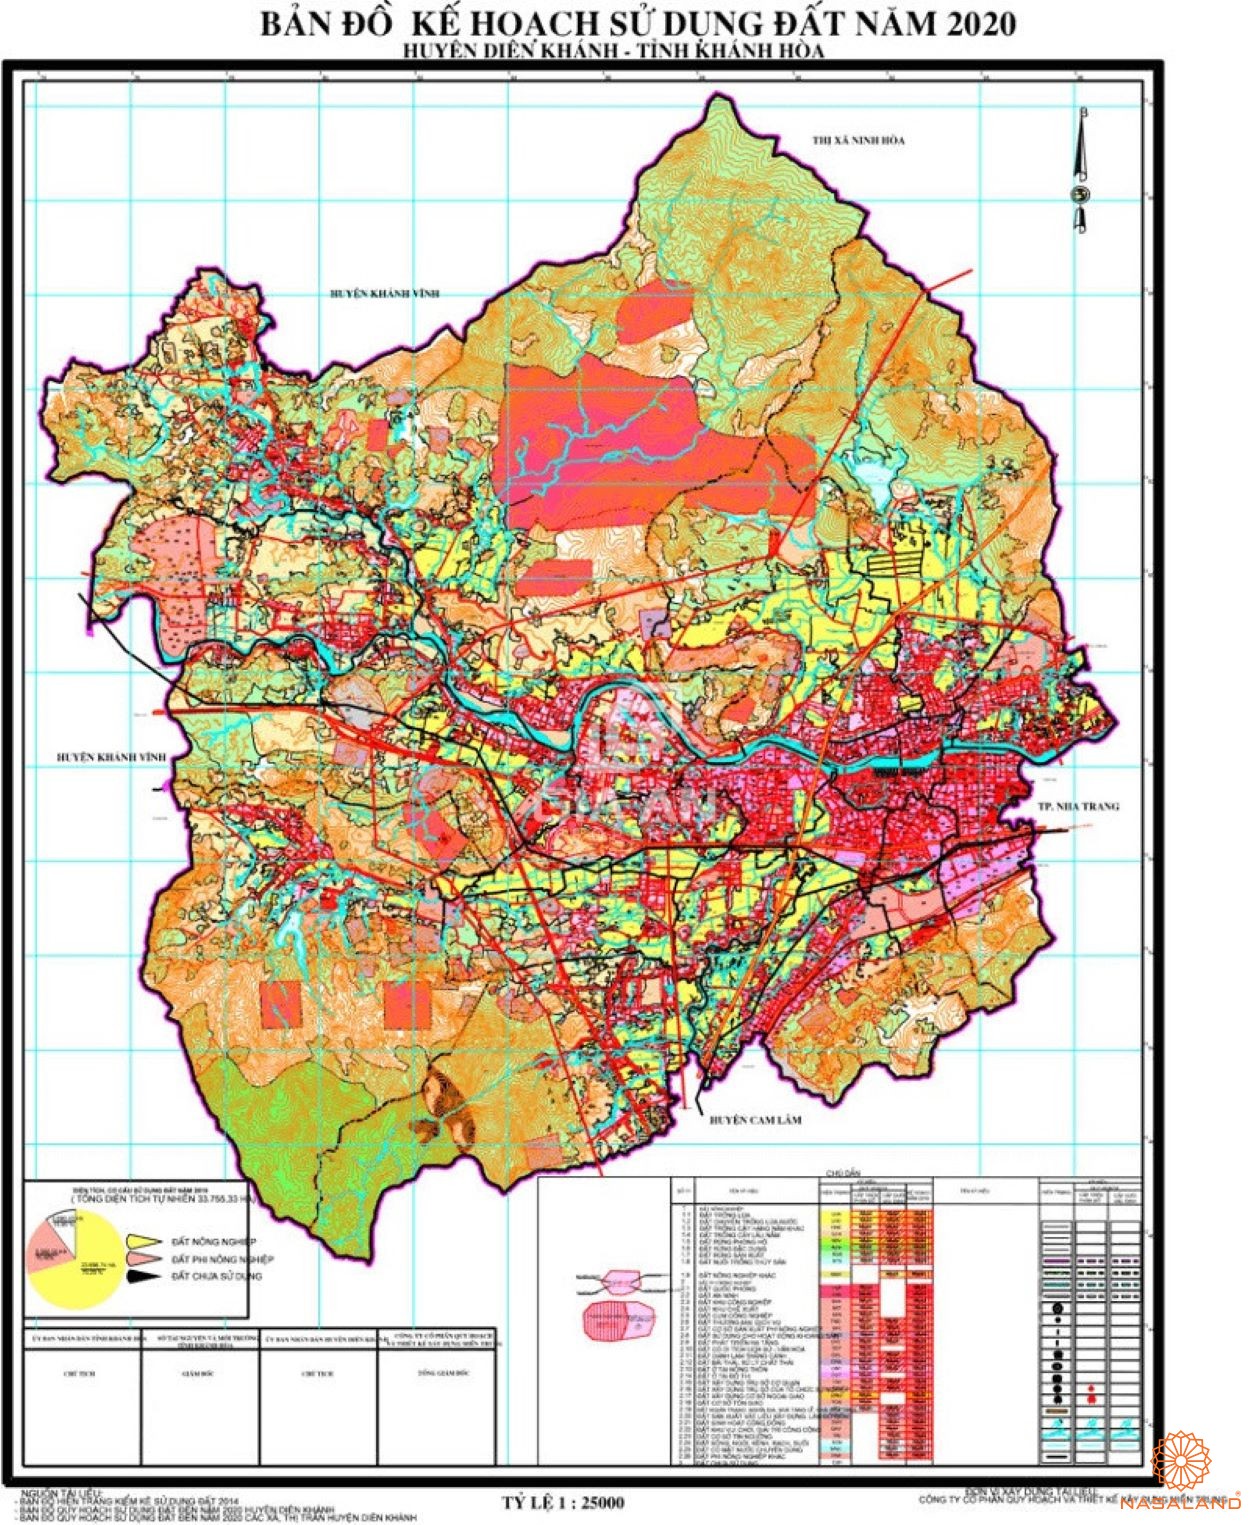 Bản đồ kế hoạch sử dụng đất Huyện Diên Khánh, Tỉnh Khánh Hòa năm 2020